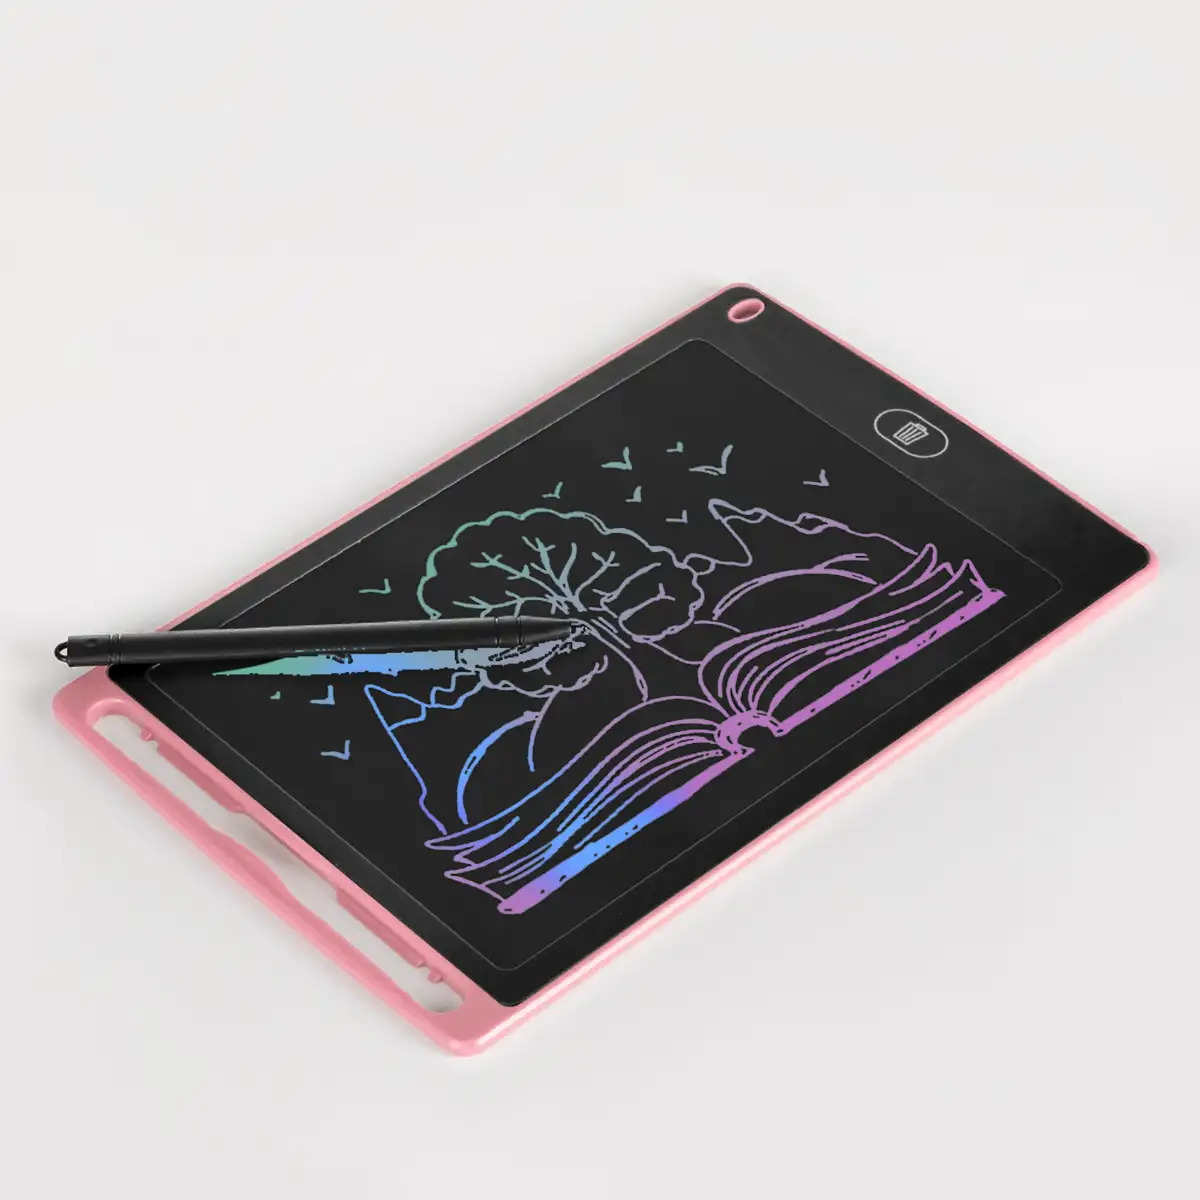 Tableta LCD portátil de dibujo y escritura de 8,5 pulgadas, con imanes de sujeción. Fondo multicolor.